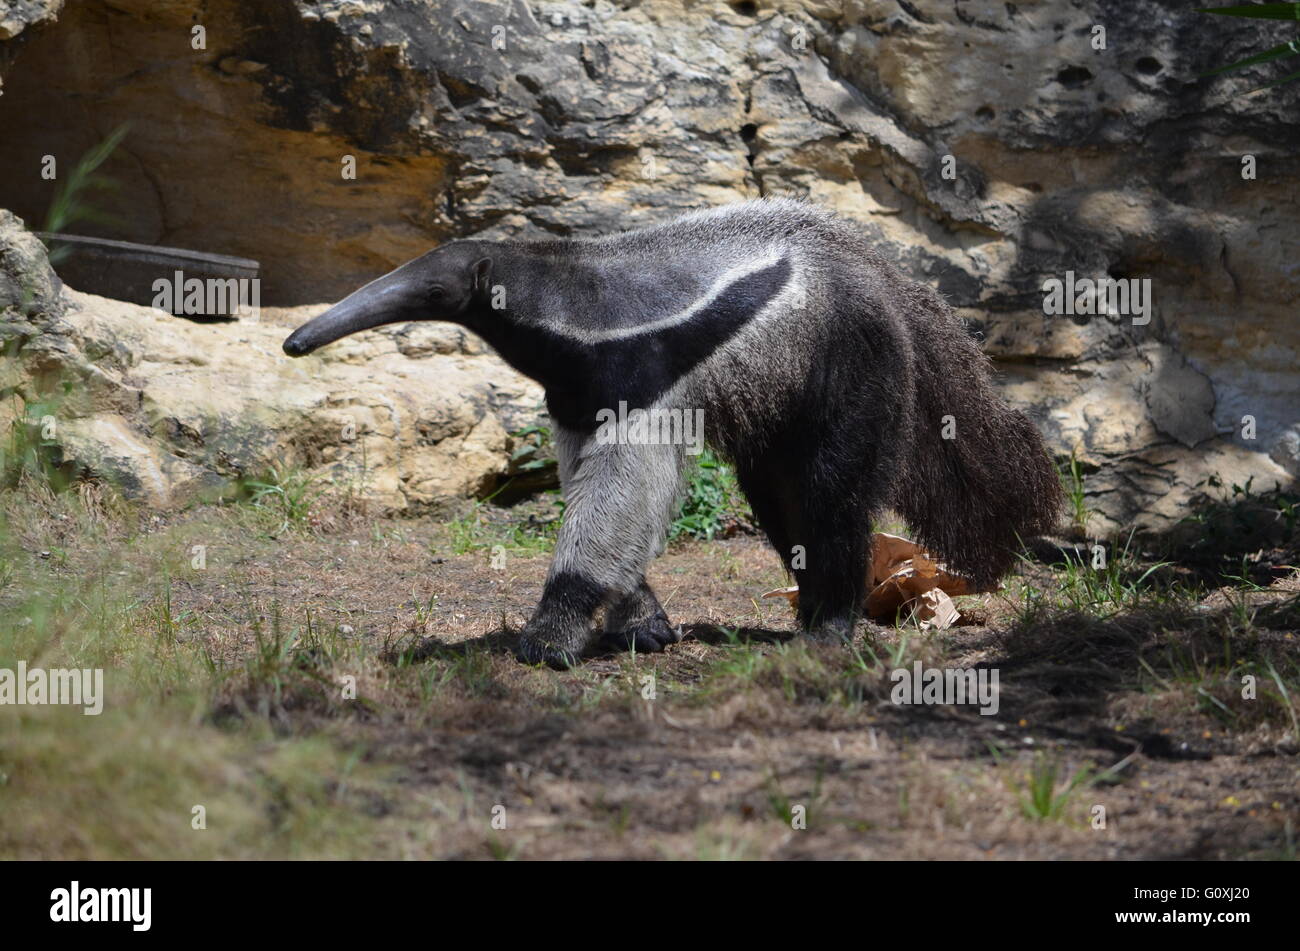 Oso hormiguero gigante en el Zoo de San Antonio Foto de stock